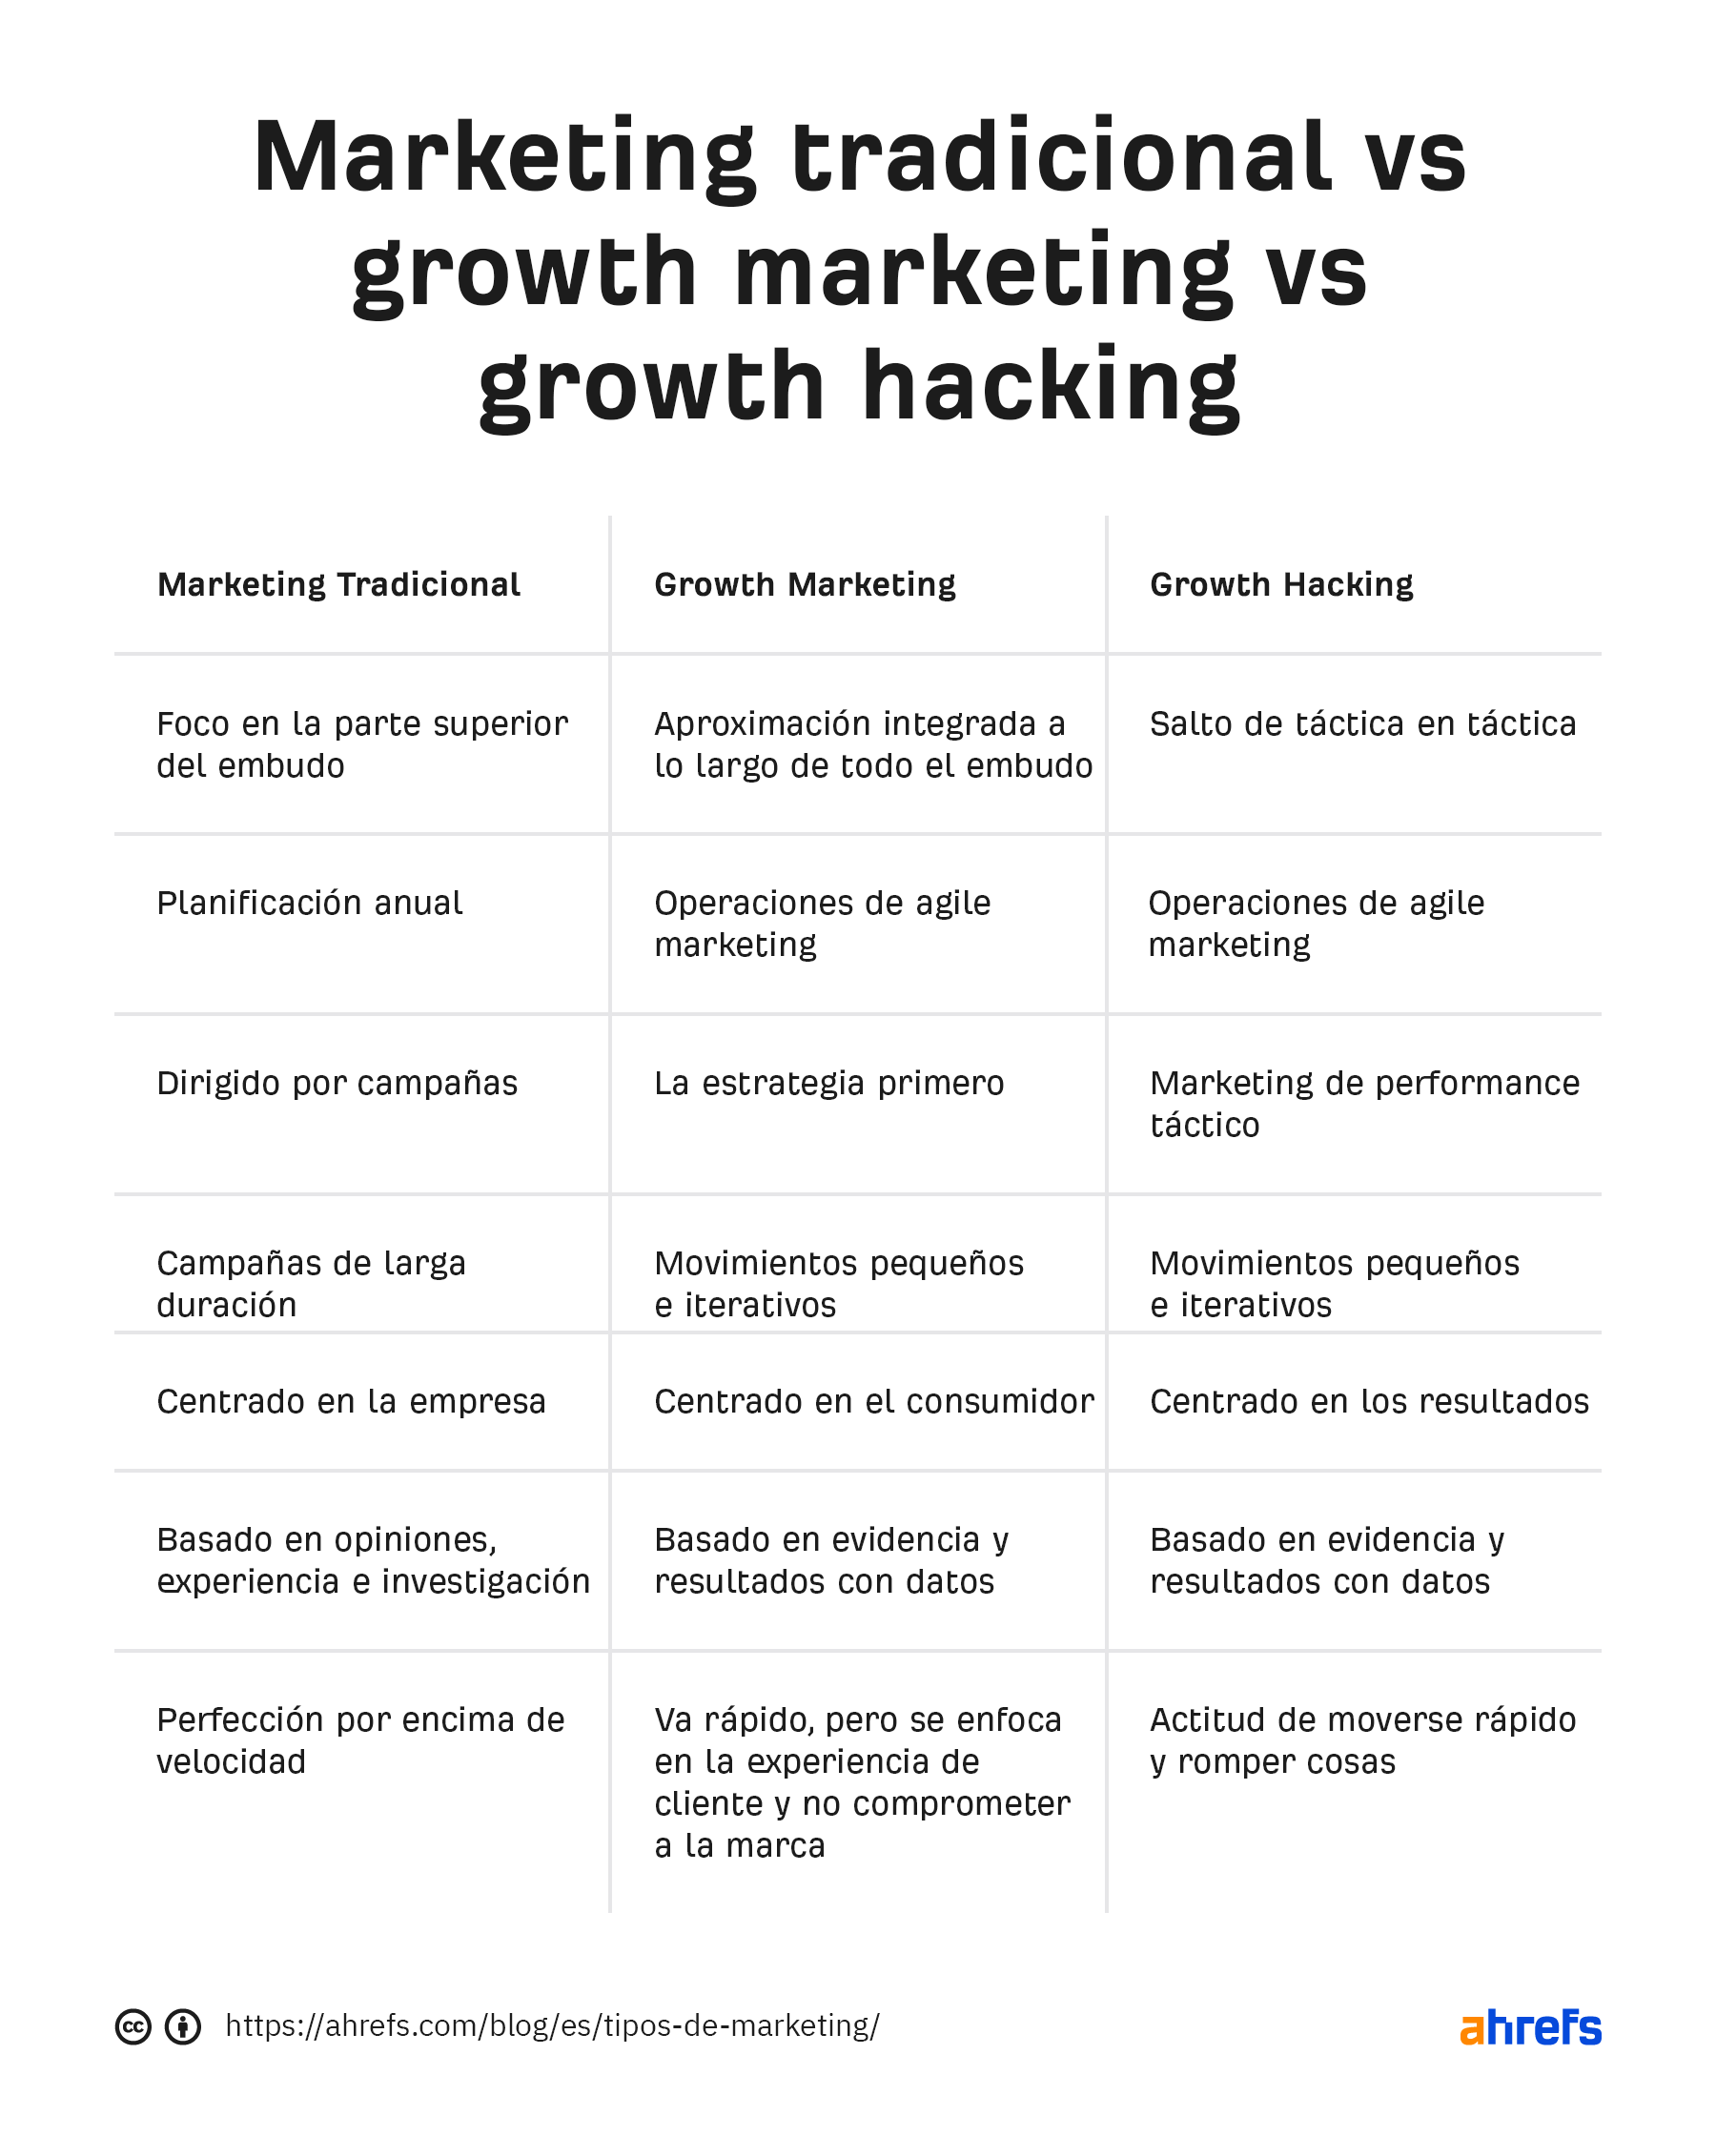 Tabla explicativa de las diferencias entre Growth Hacking, Growth Marketing y Marketing tradicional